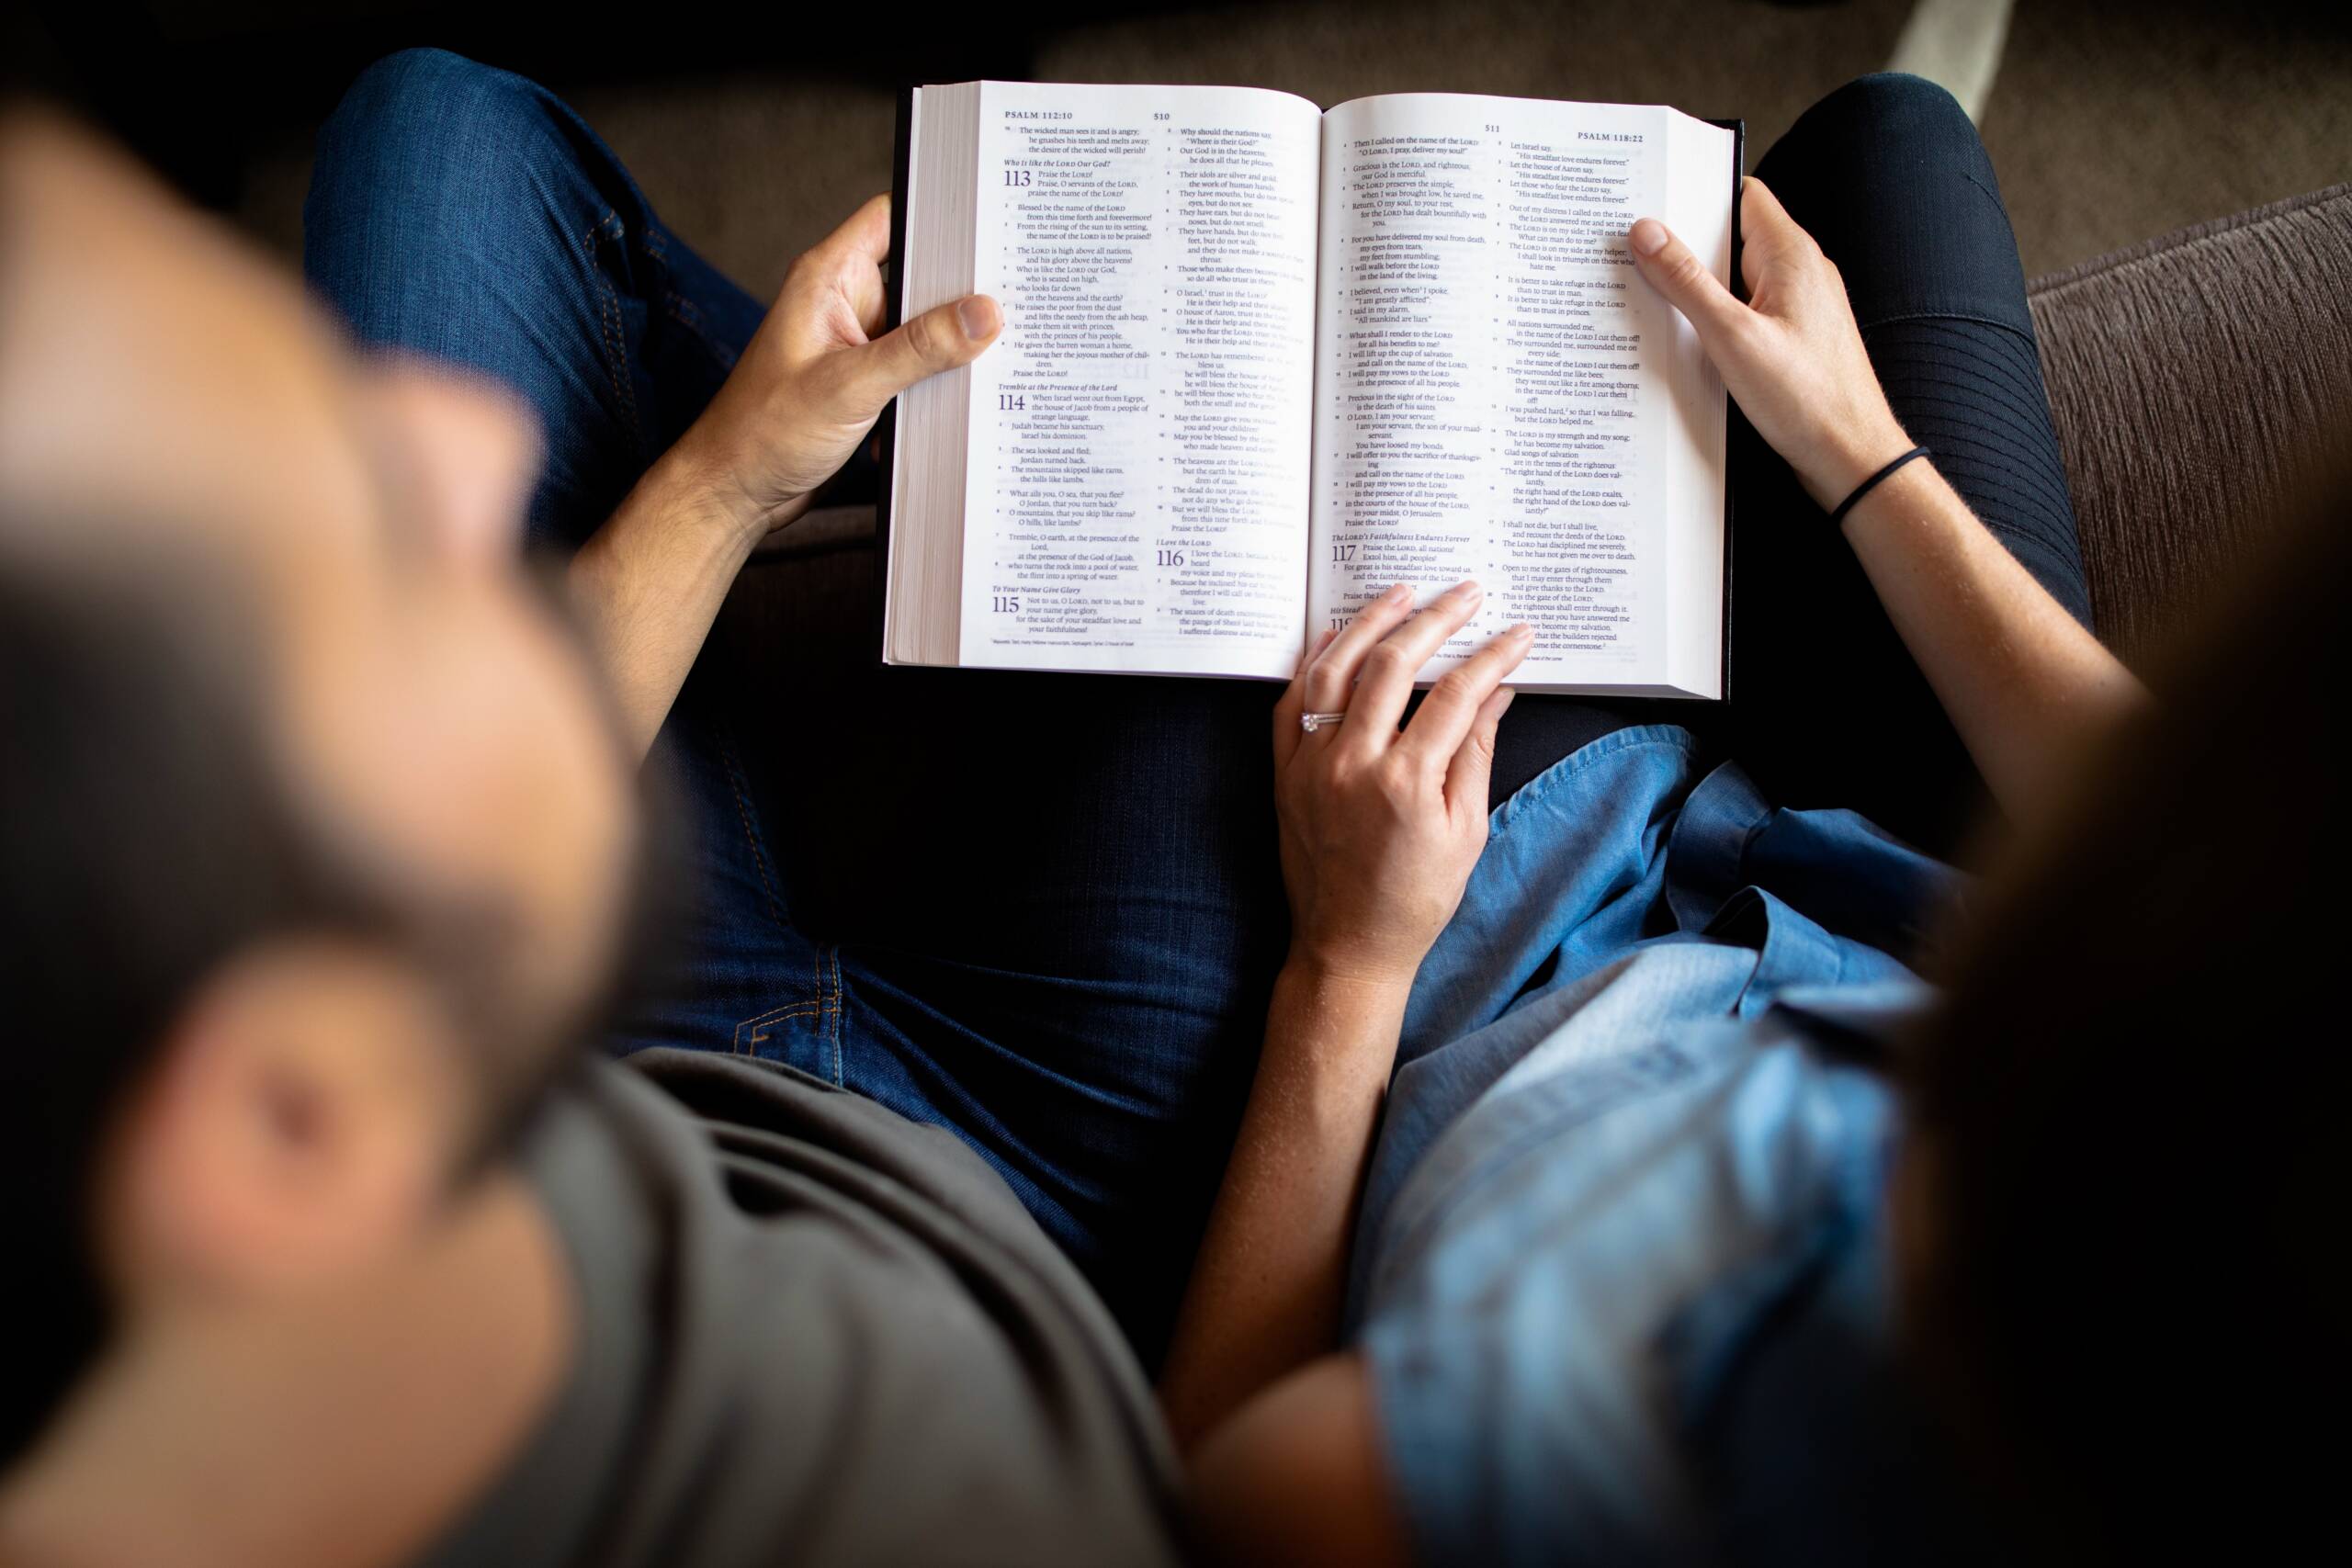 Importancia del estudio bíblico